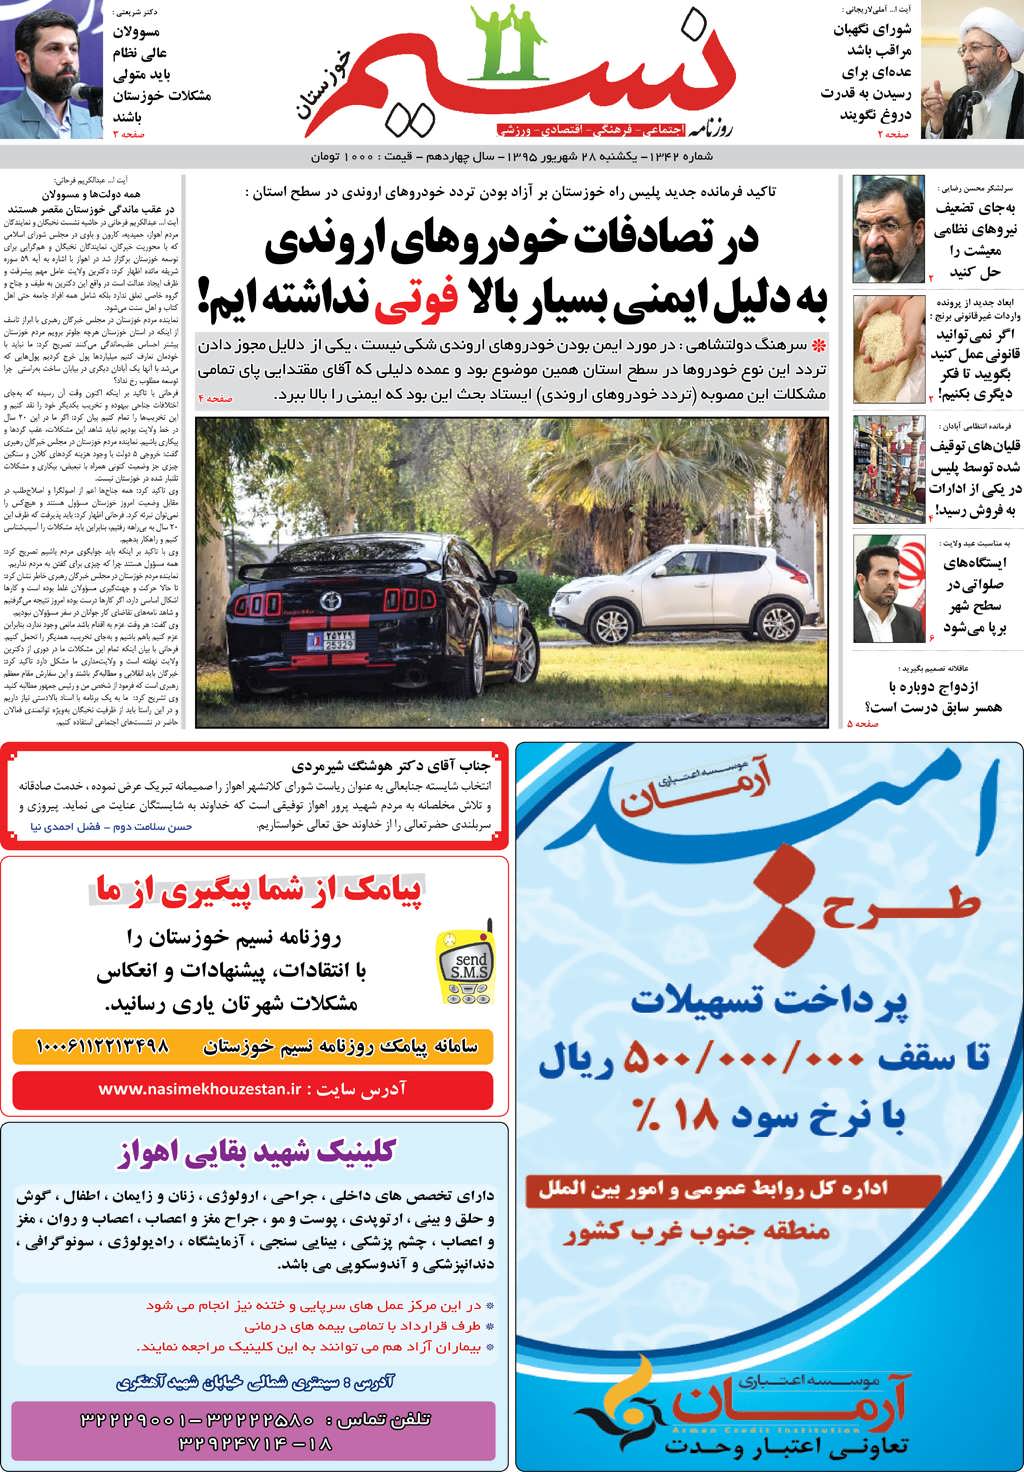 صفحه اصلی روزنامه نسیم شماره 1342